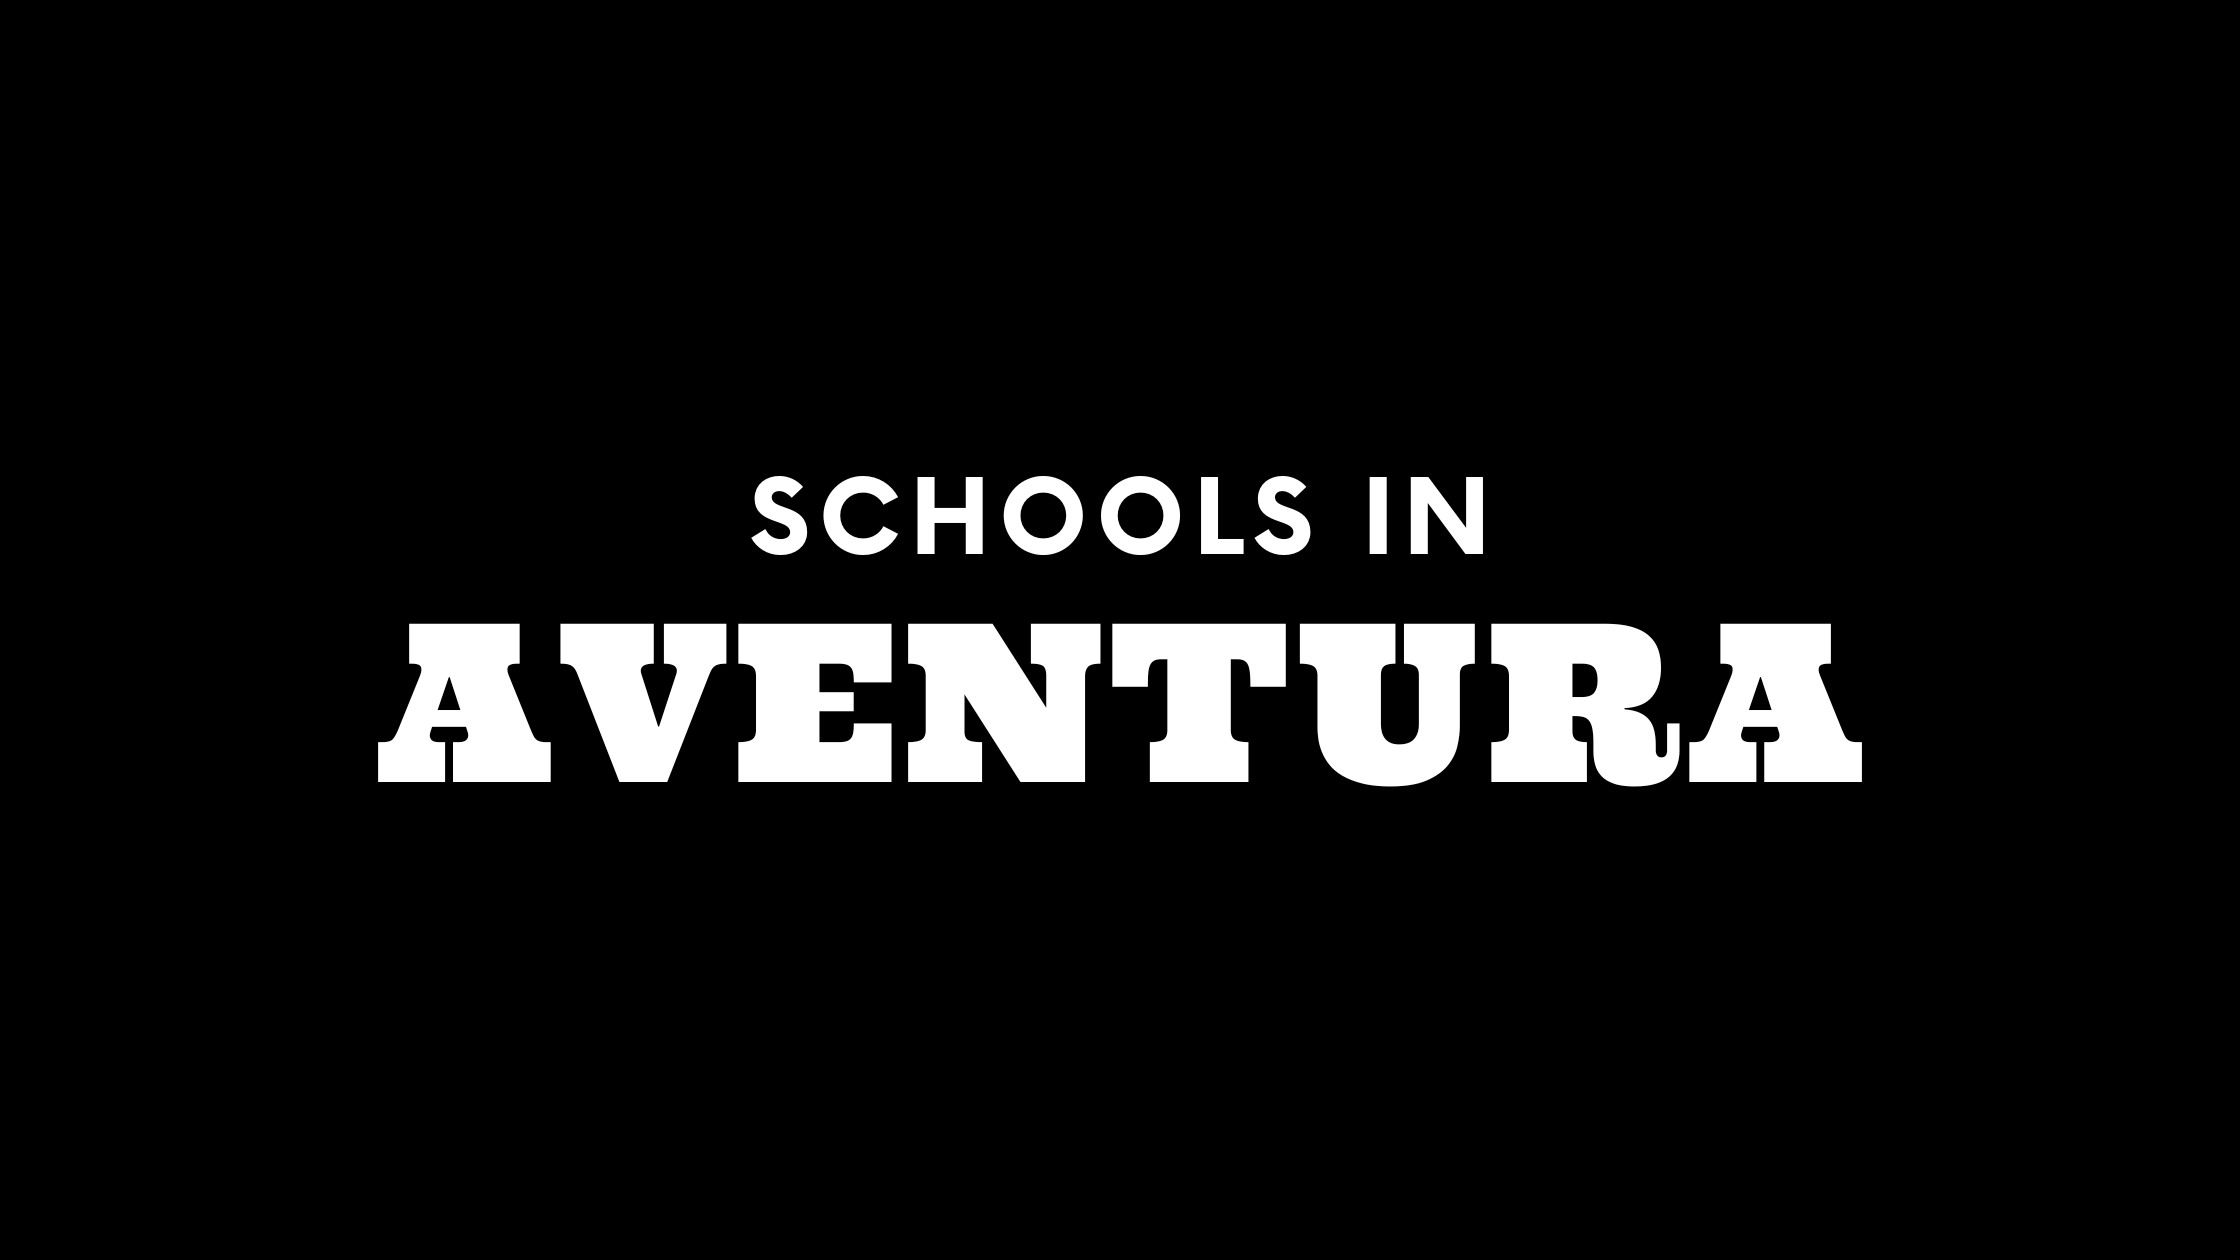 Schools in Aventura